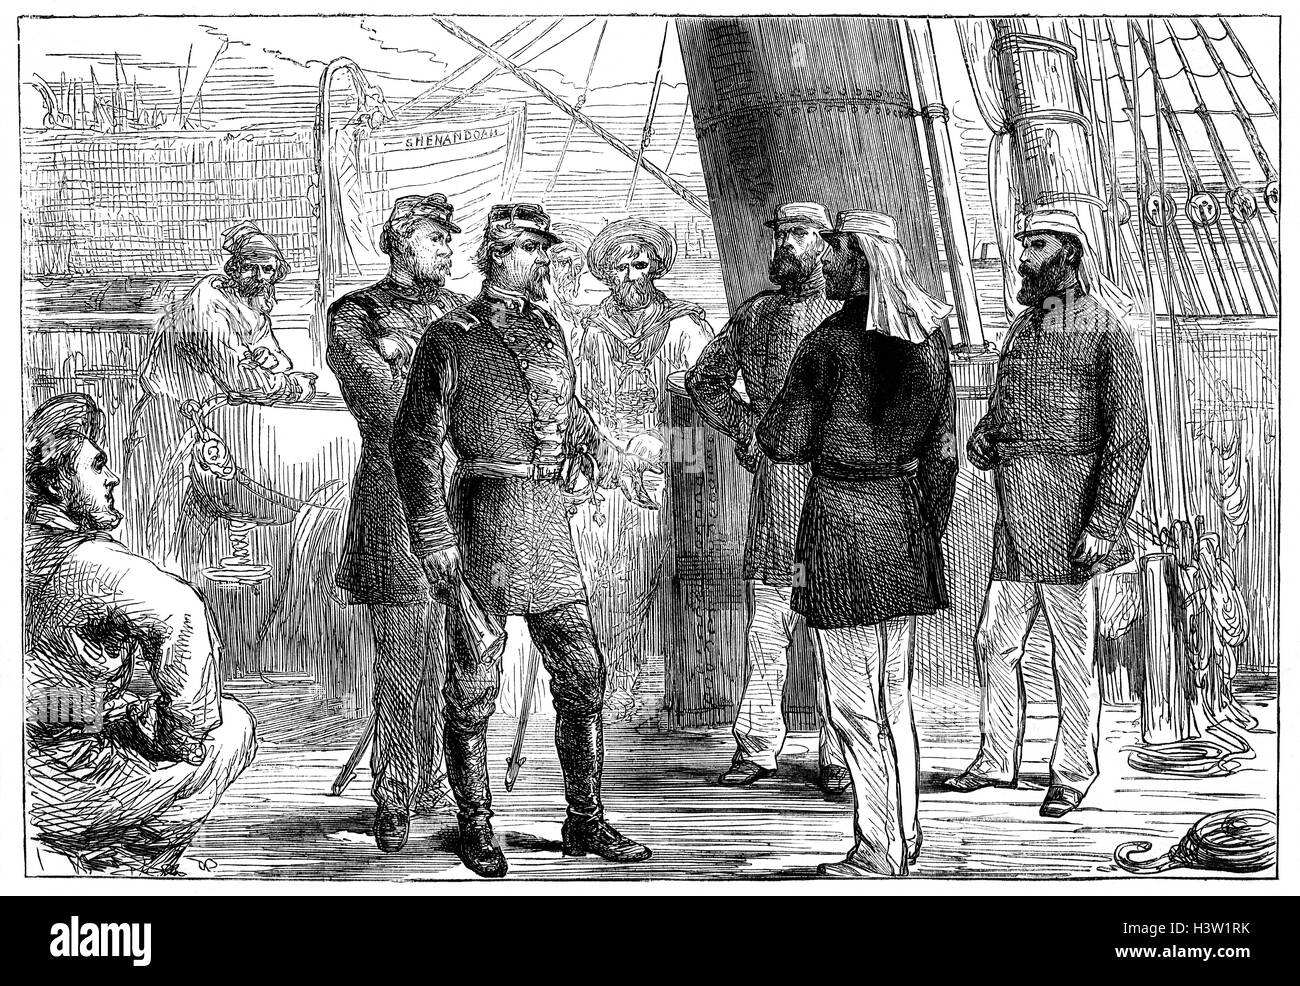 CSS Shenandoah war ein Eisen gerahmt, Teak-Beplankung, voll getakelt Schiff mit Hilfs Dampfkraft in Liverpool, England im Jahre 1865 registriert. Sie war von der Konföderation gekauft und heimlich zog aus England auf den Kanarischen Inseln, um sie in ein Kriegsschiff zu konvertieren. In den nächsten sechs Wochen abgekocht Shenandoah Südatlantik, zerstören oder Verklebung über acht Union Schiffe, bevor Sie ein Problem mit ihrem Propellerwelle vor der Küste Südamerikas entwickelt. Um zu vermeiden, patrouillieren Union Kriegsschiffe fuhr sie nach Melbourne, 9600 Kilometer entfernt. Stockfoto